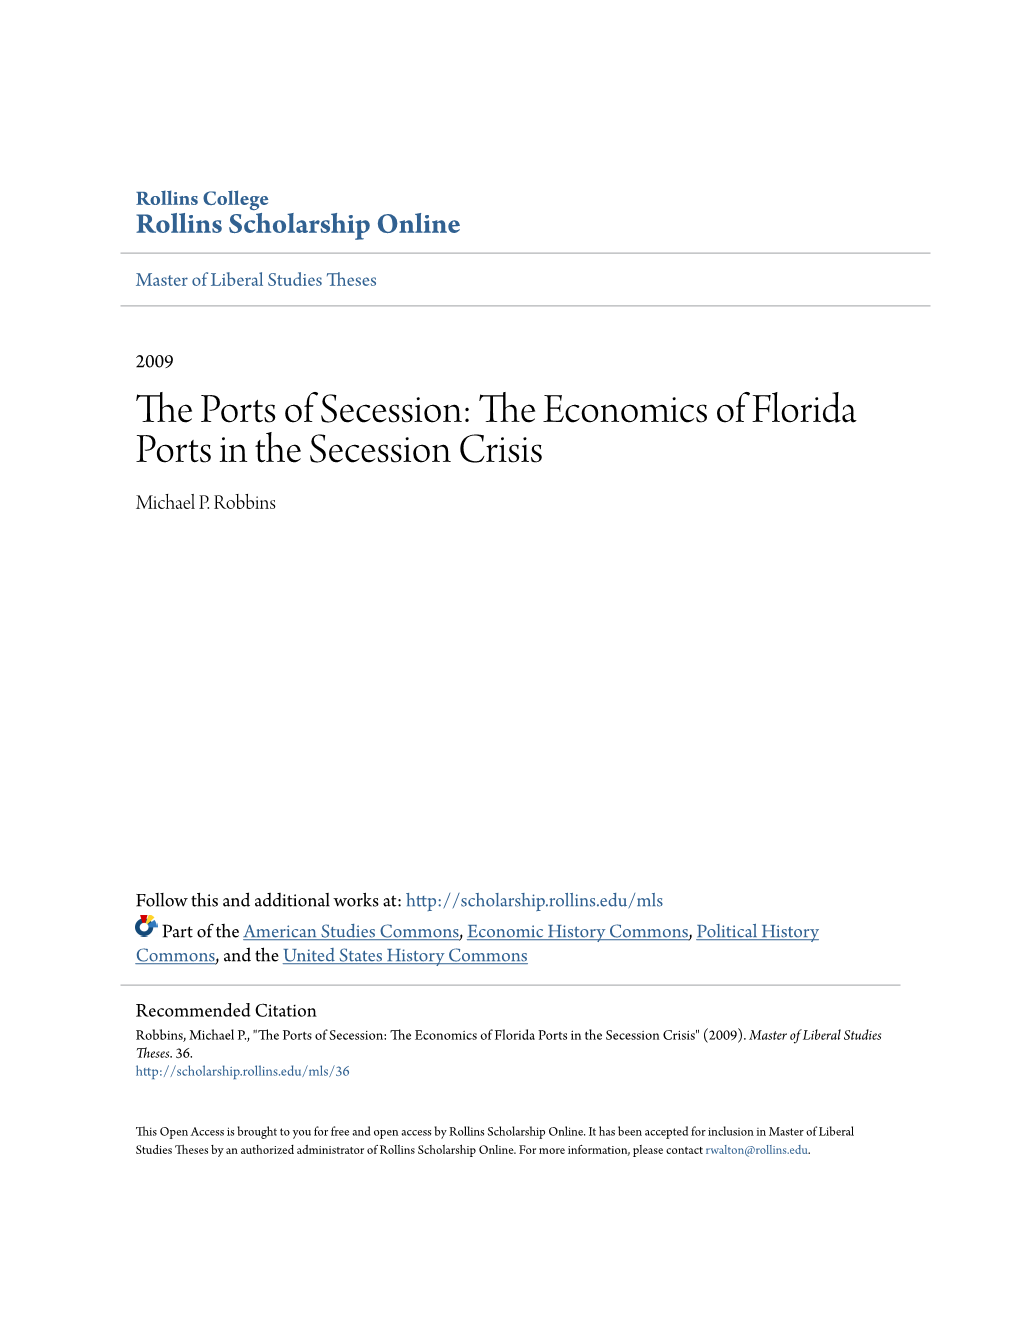 The Economics of Florida Ports in the Secession Crisis